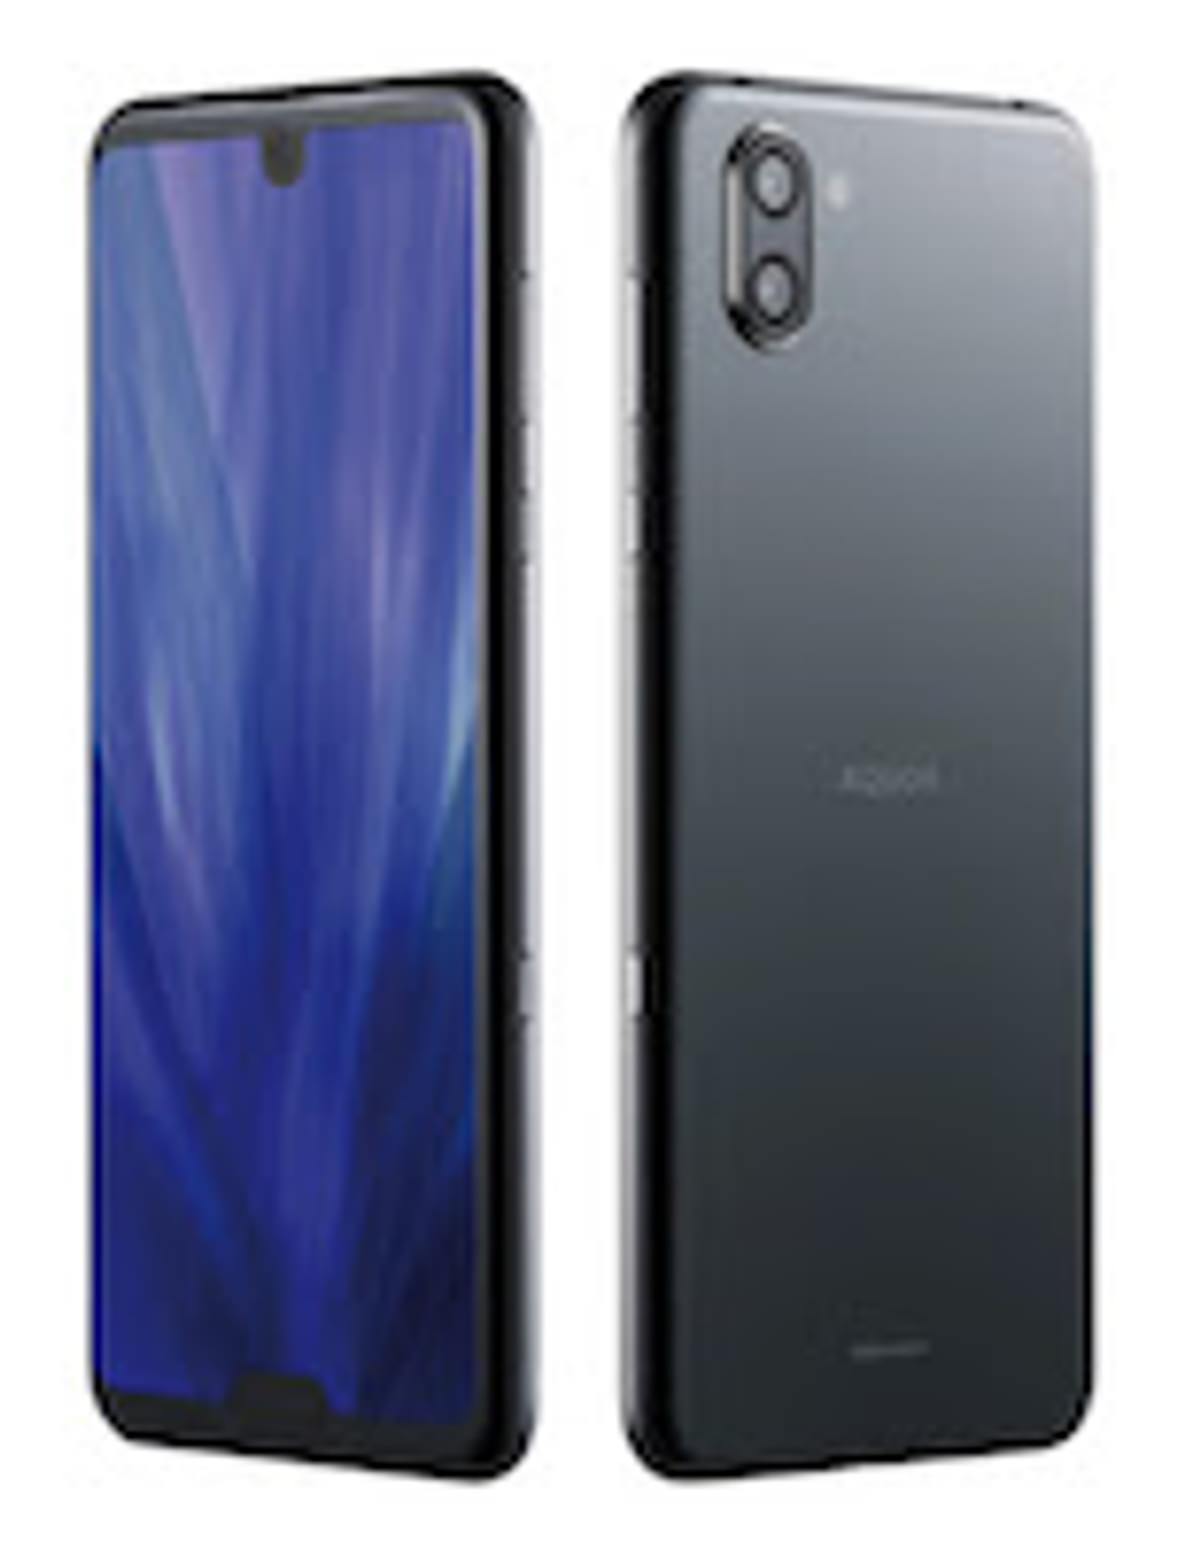 Sharp AQUOS R3 smartphone beschikbaar in Europa image